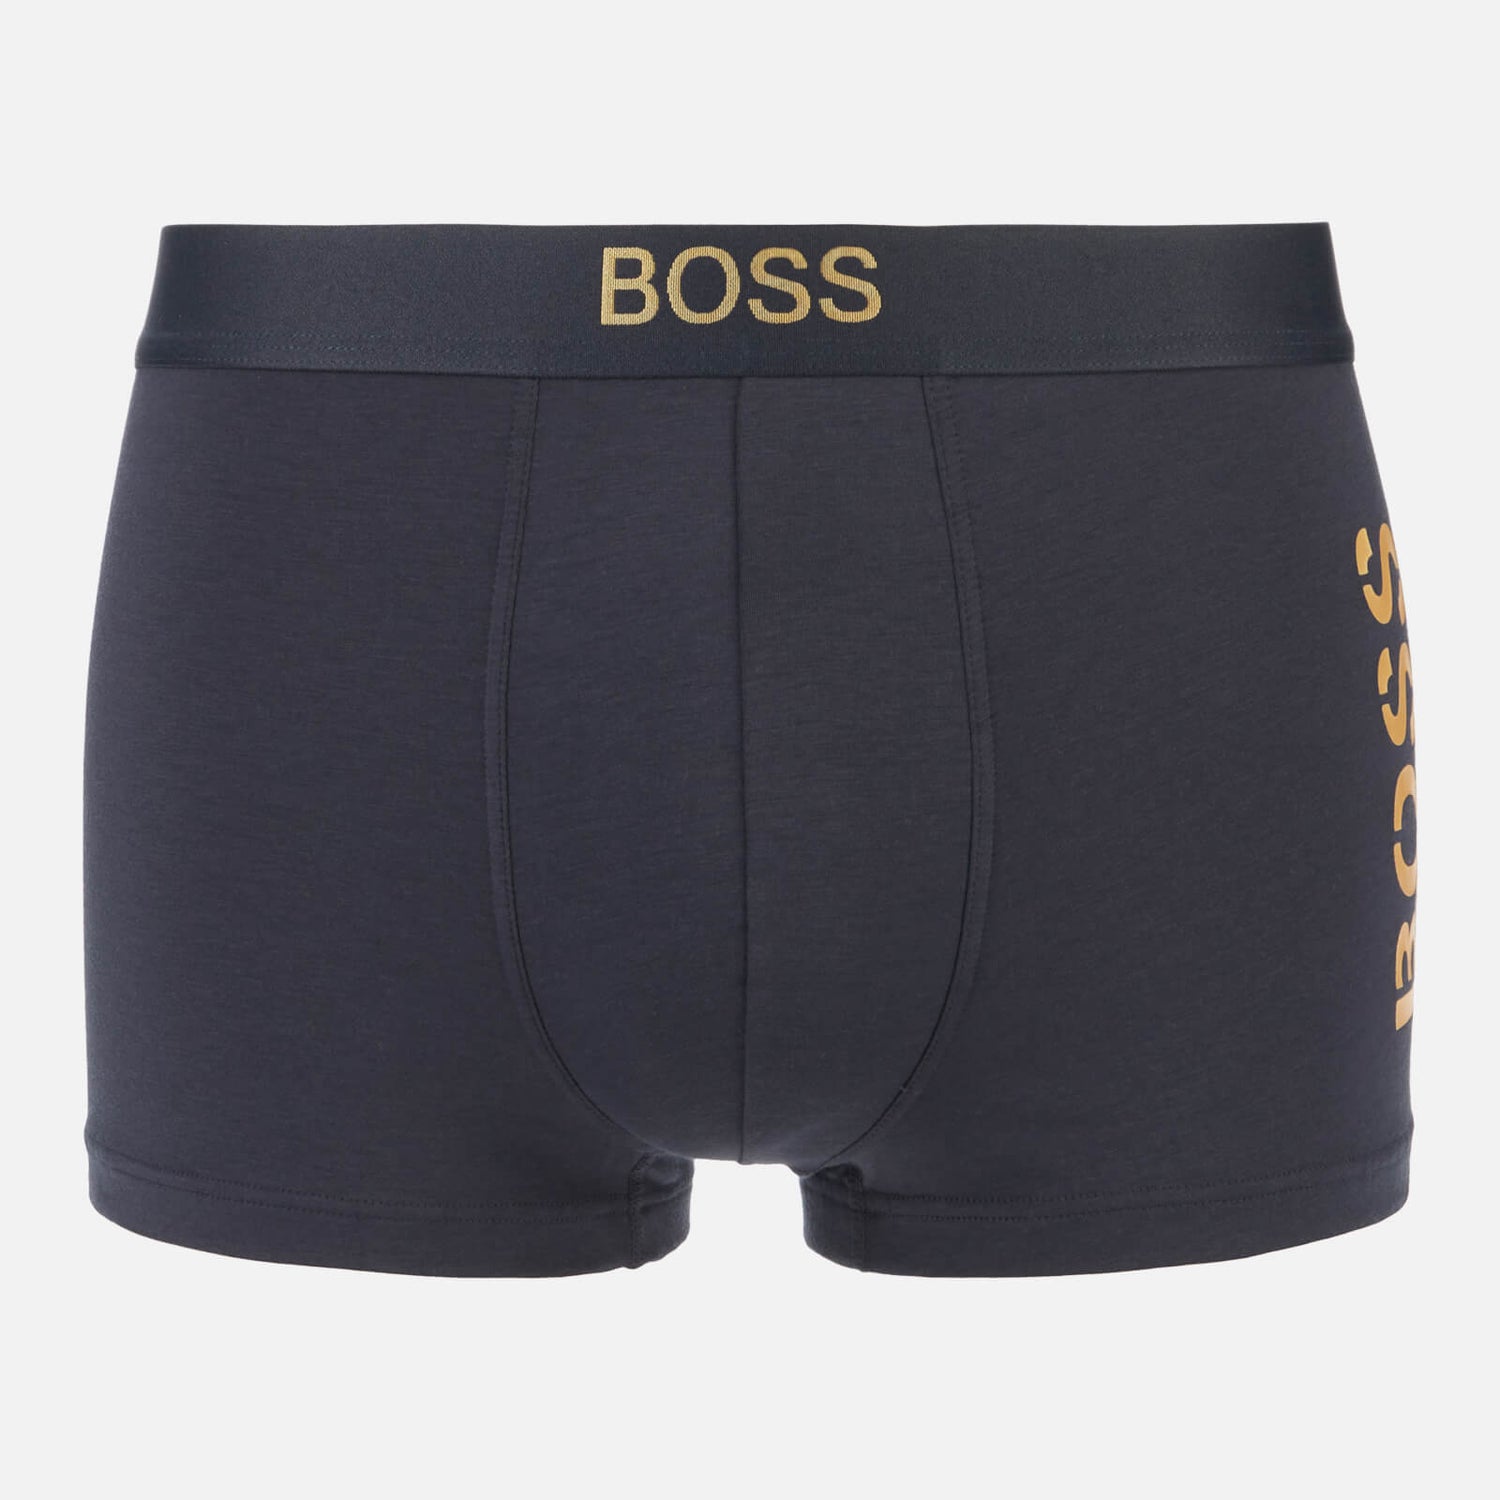 BOSS Bodywear Men's Starlight Trunks - Navy